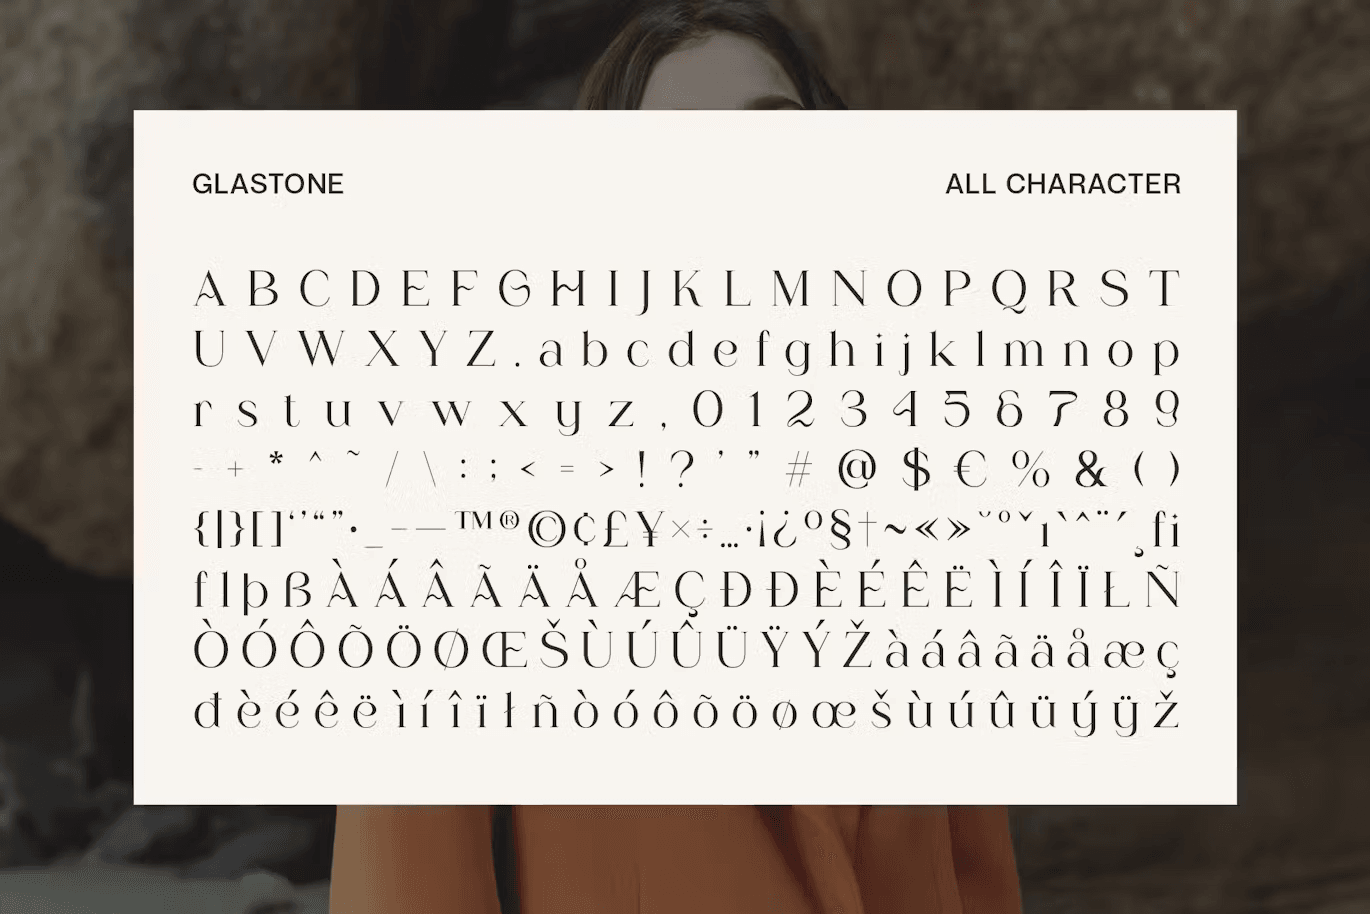 Glastone - Modern Serif Typeface by craftsupplyco